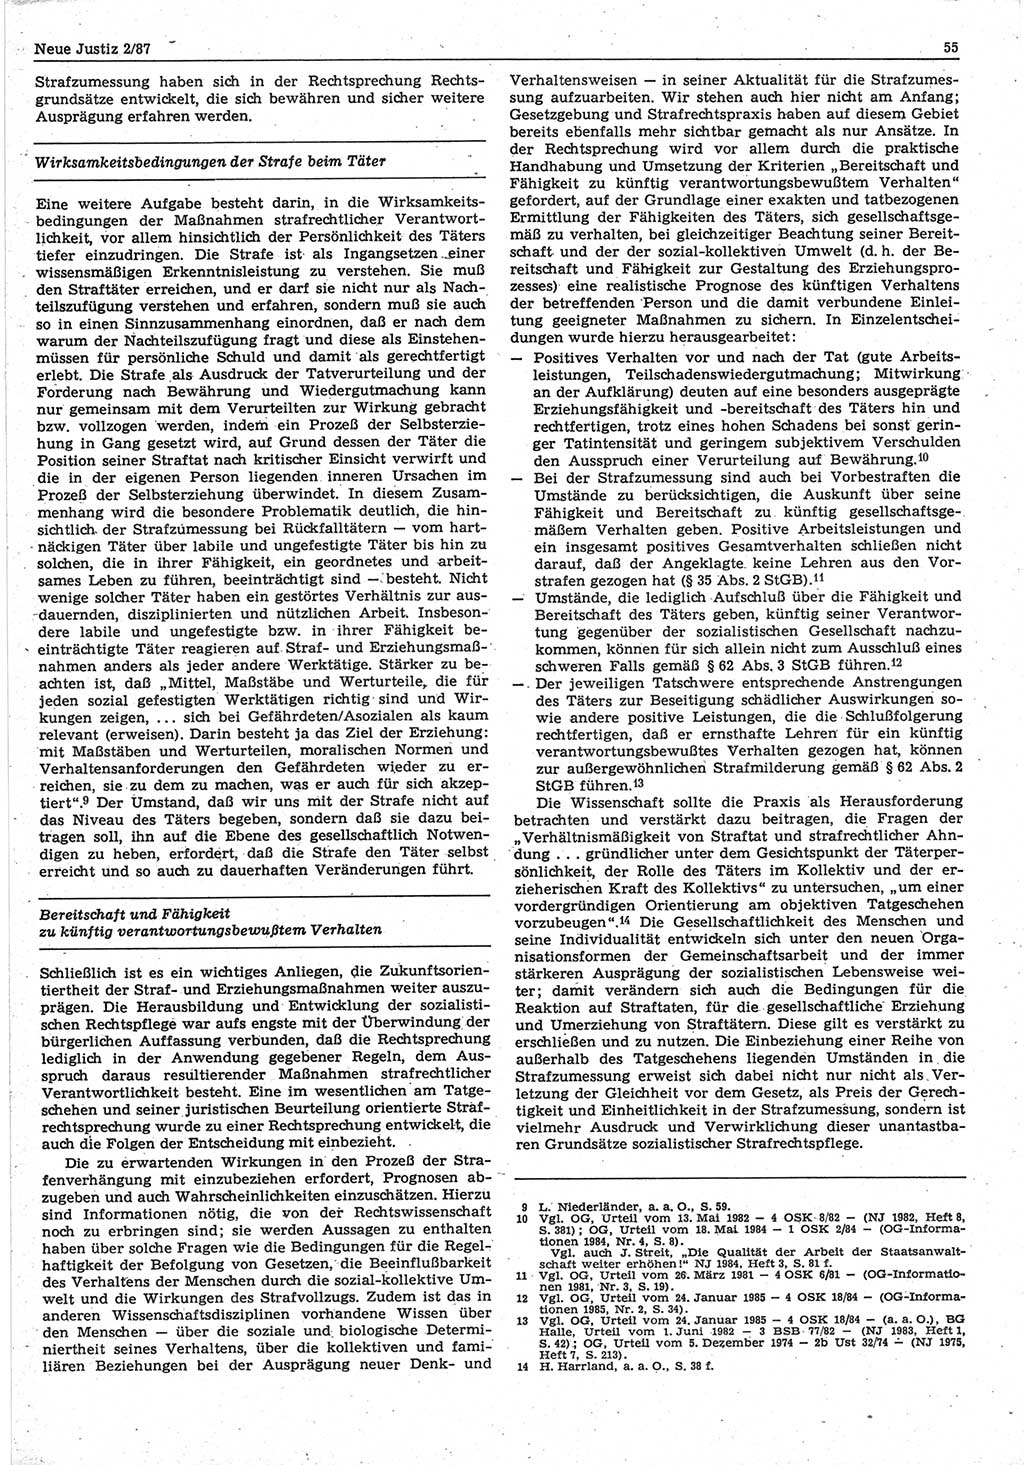 Neue Justiz (NJ), Zeitschrift für sozialistisches Recht und Gesetzlichkeit [Deutsche Demokratische Republik (DDR)], 41. Jahrgang 1987, Seite 55 (NJ DDR 1987, S. 55)